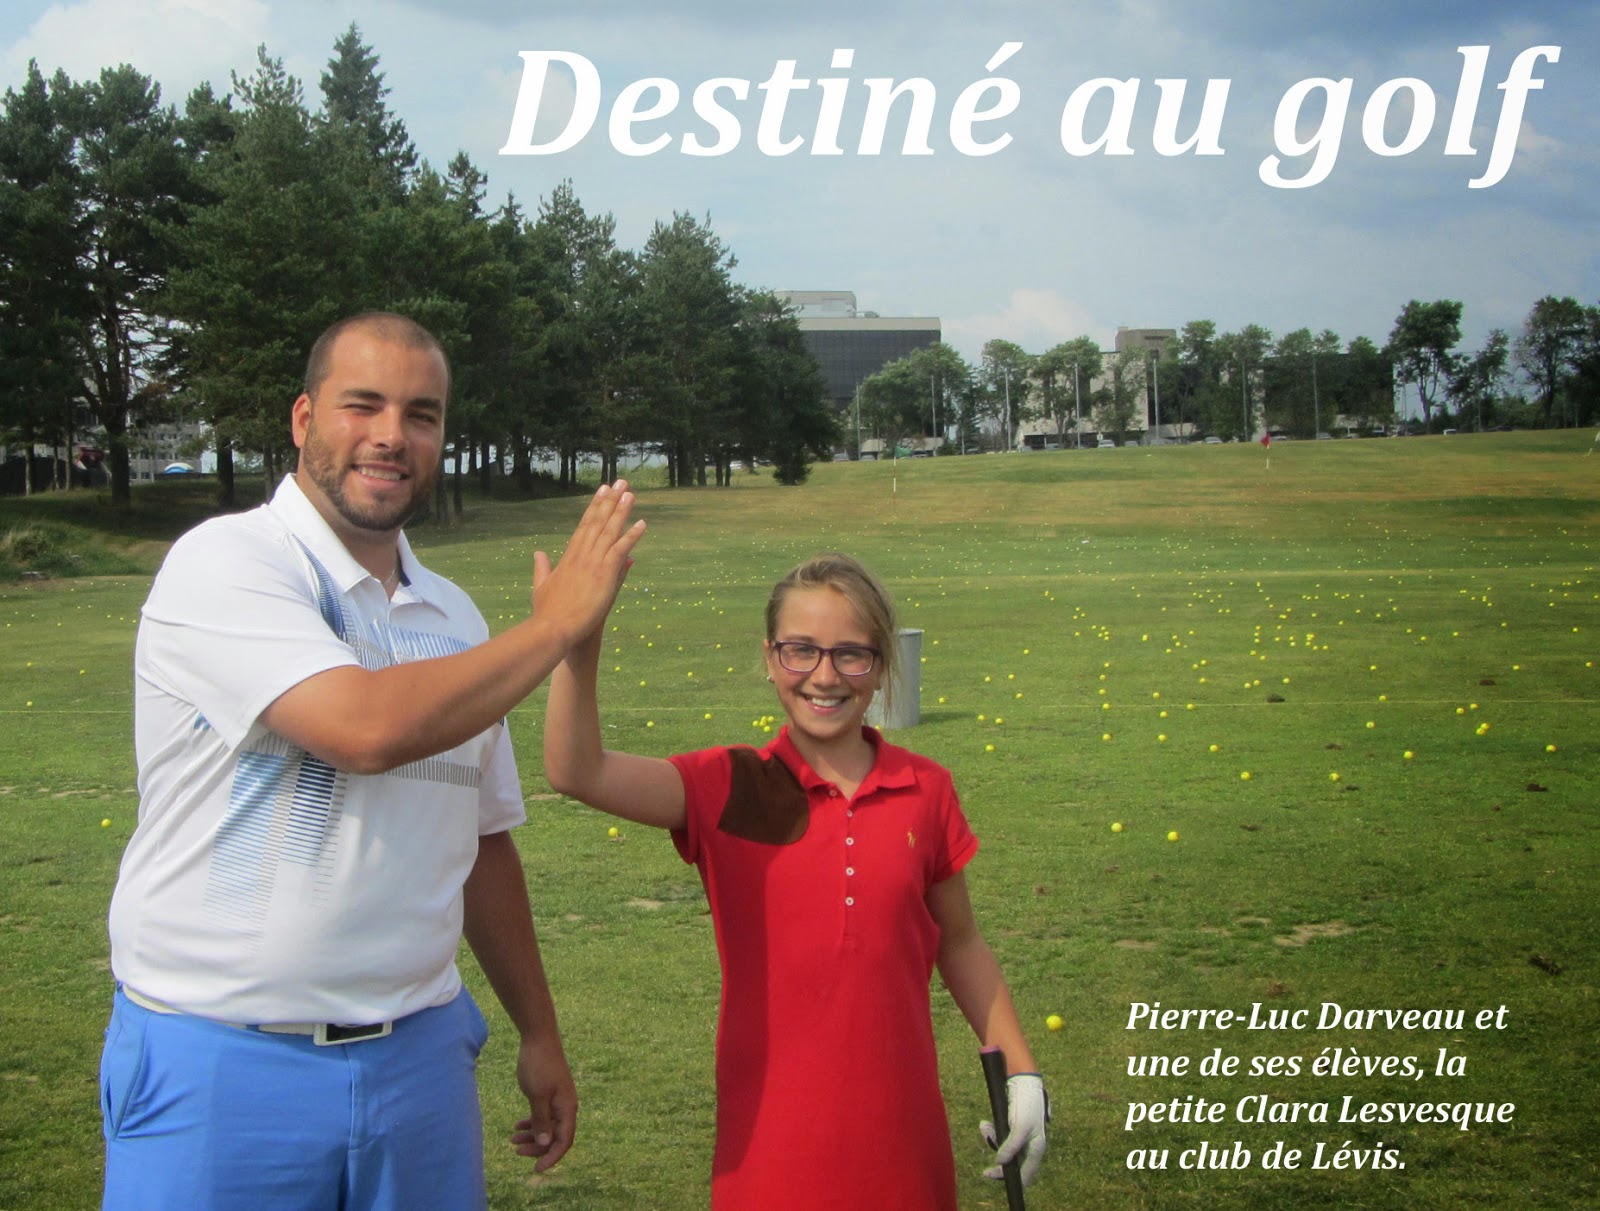 Pierre-Luc Darveau, destiné au golf